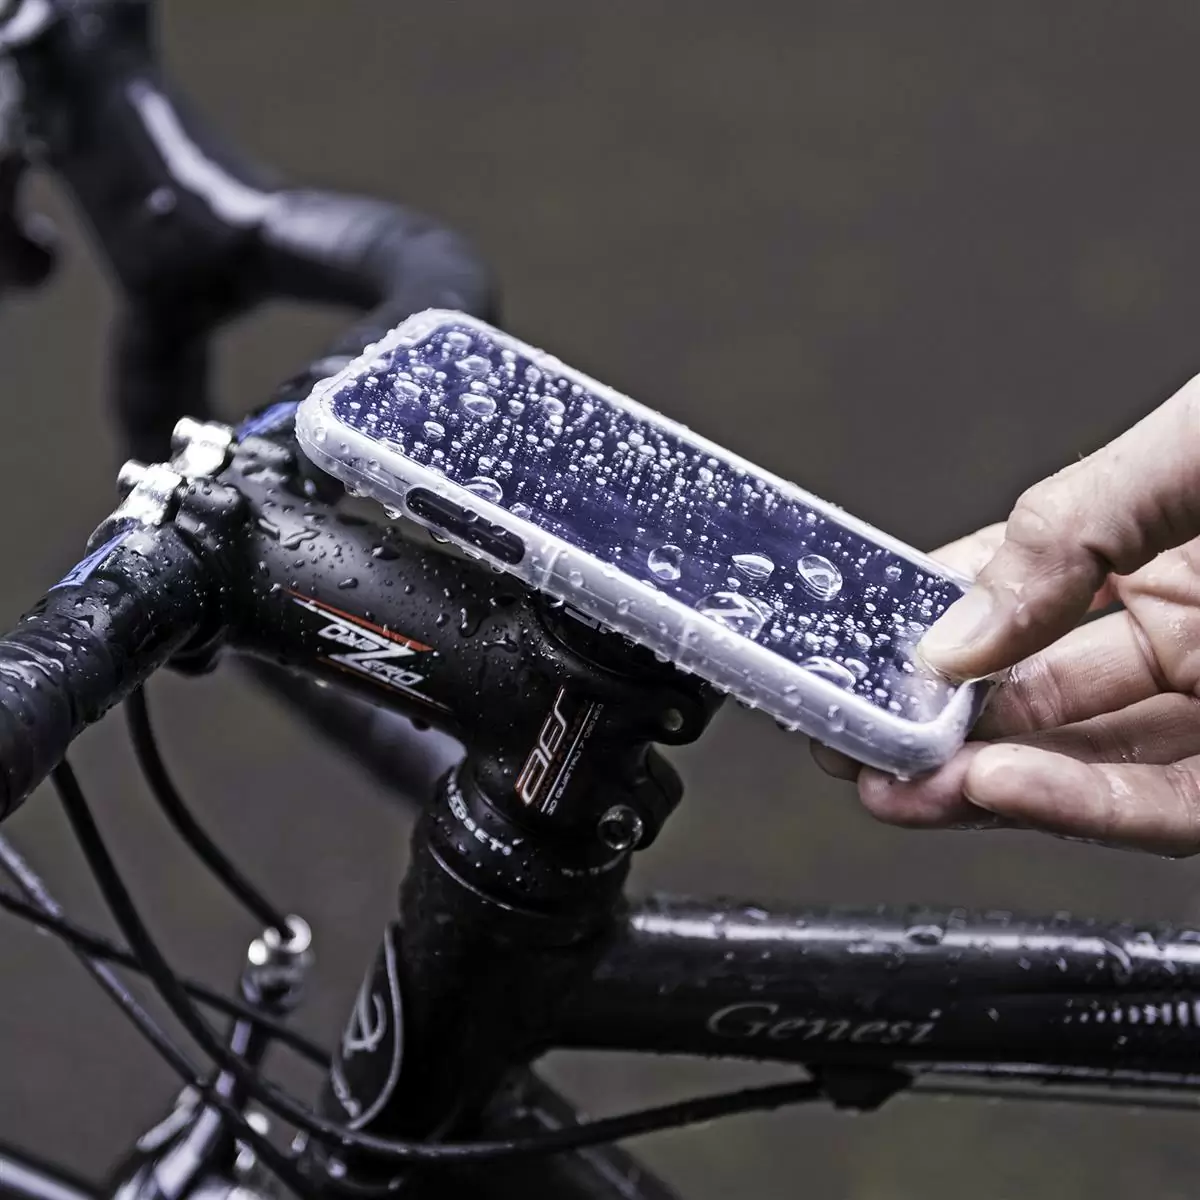 Protégez votre vélo avec chaîne en silicone cadre de maintien protection VTT